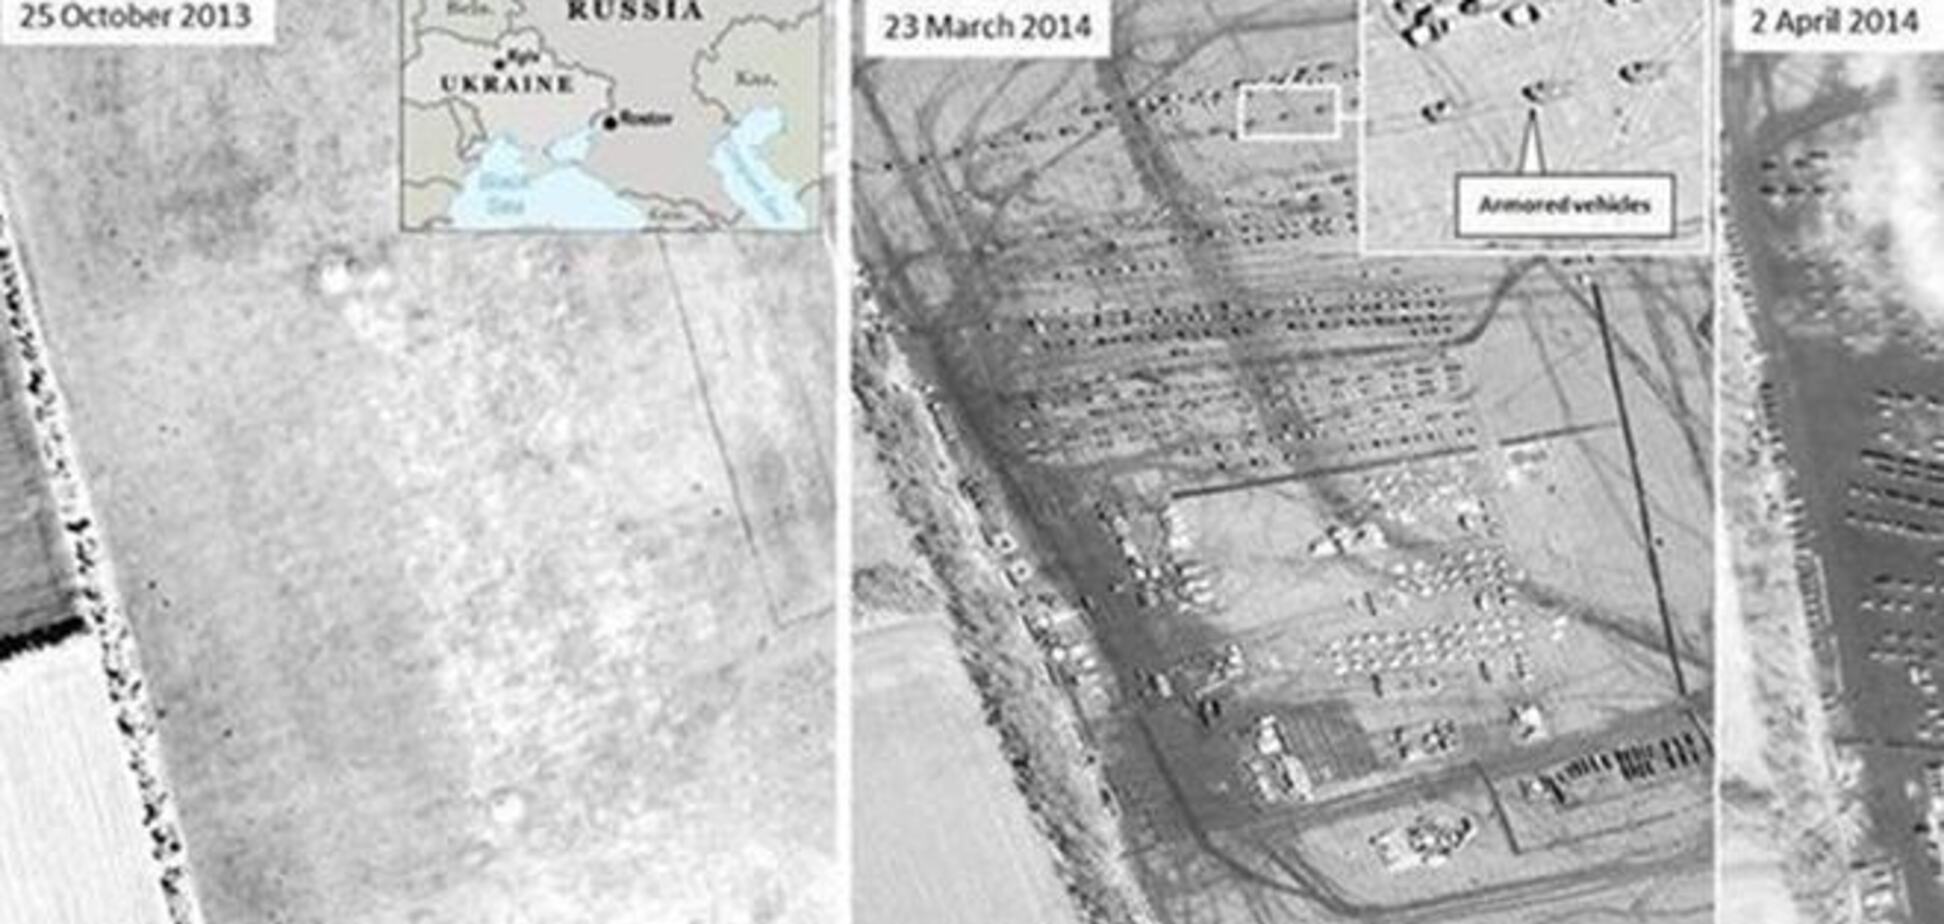 Російські військові поступово просуваються до українського кордону. Фото з супутника